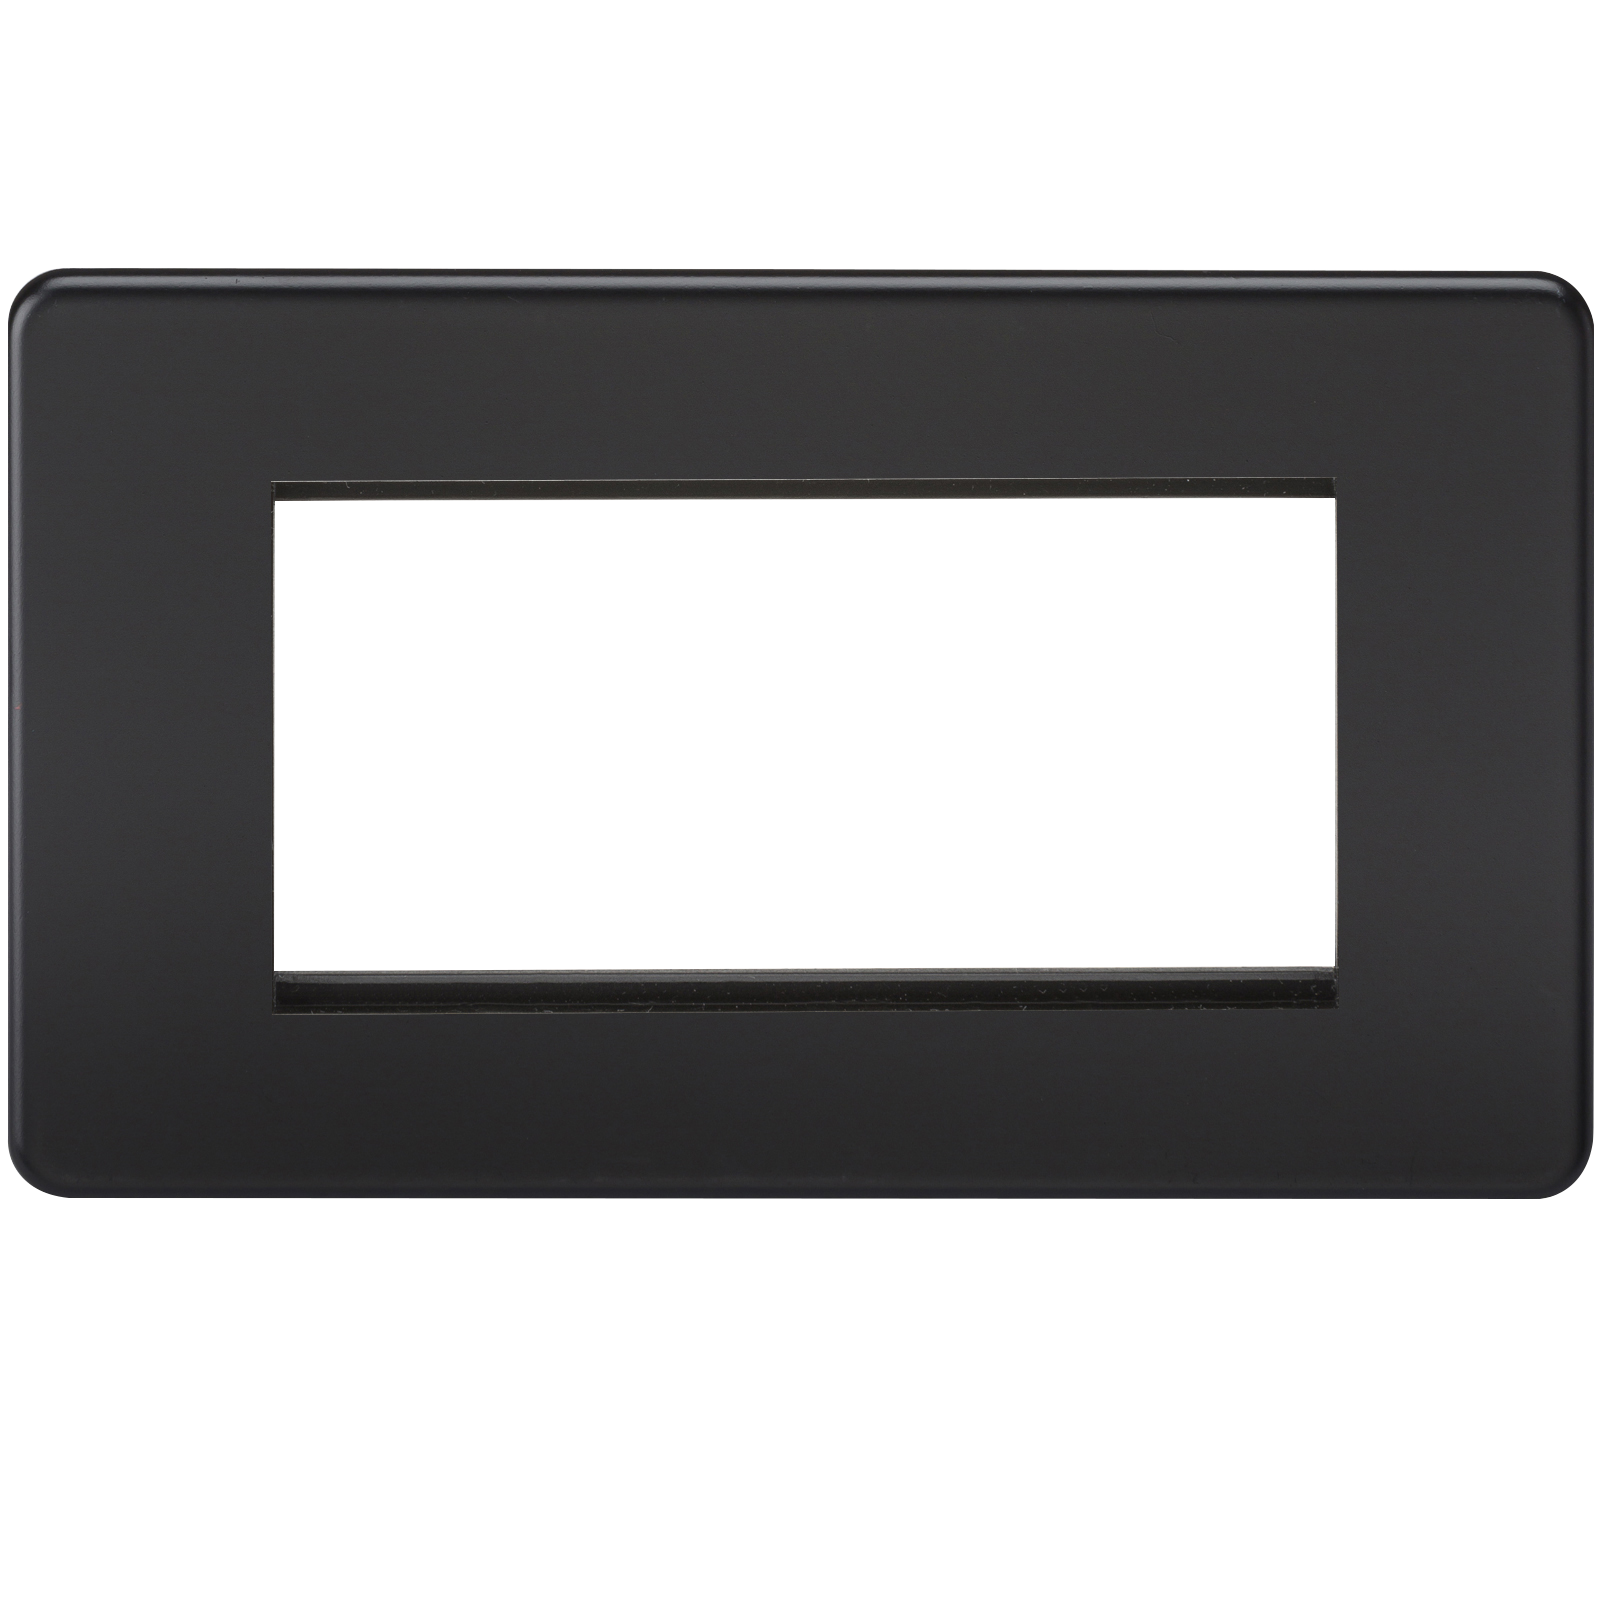 Screwless 4G Modular Faceplate - Matt Black - SF4GMB 